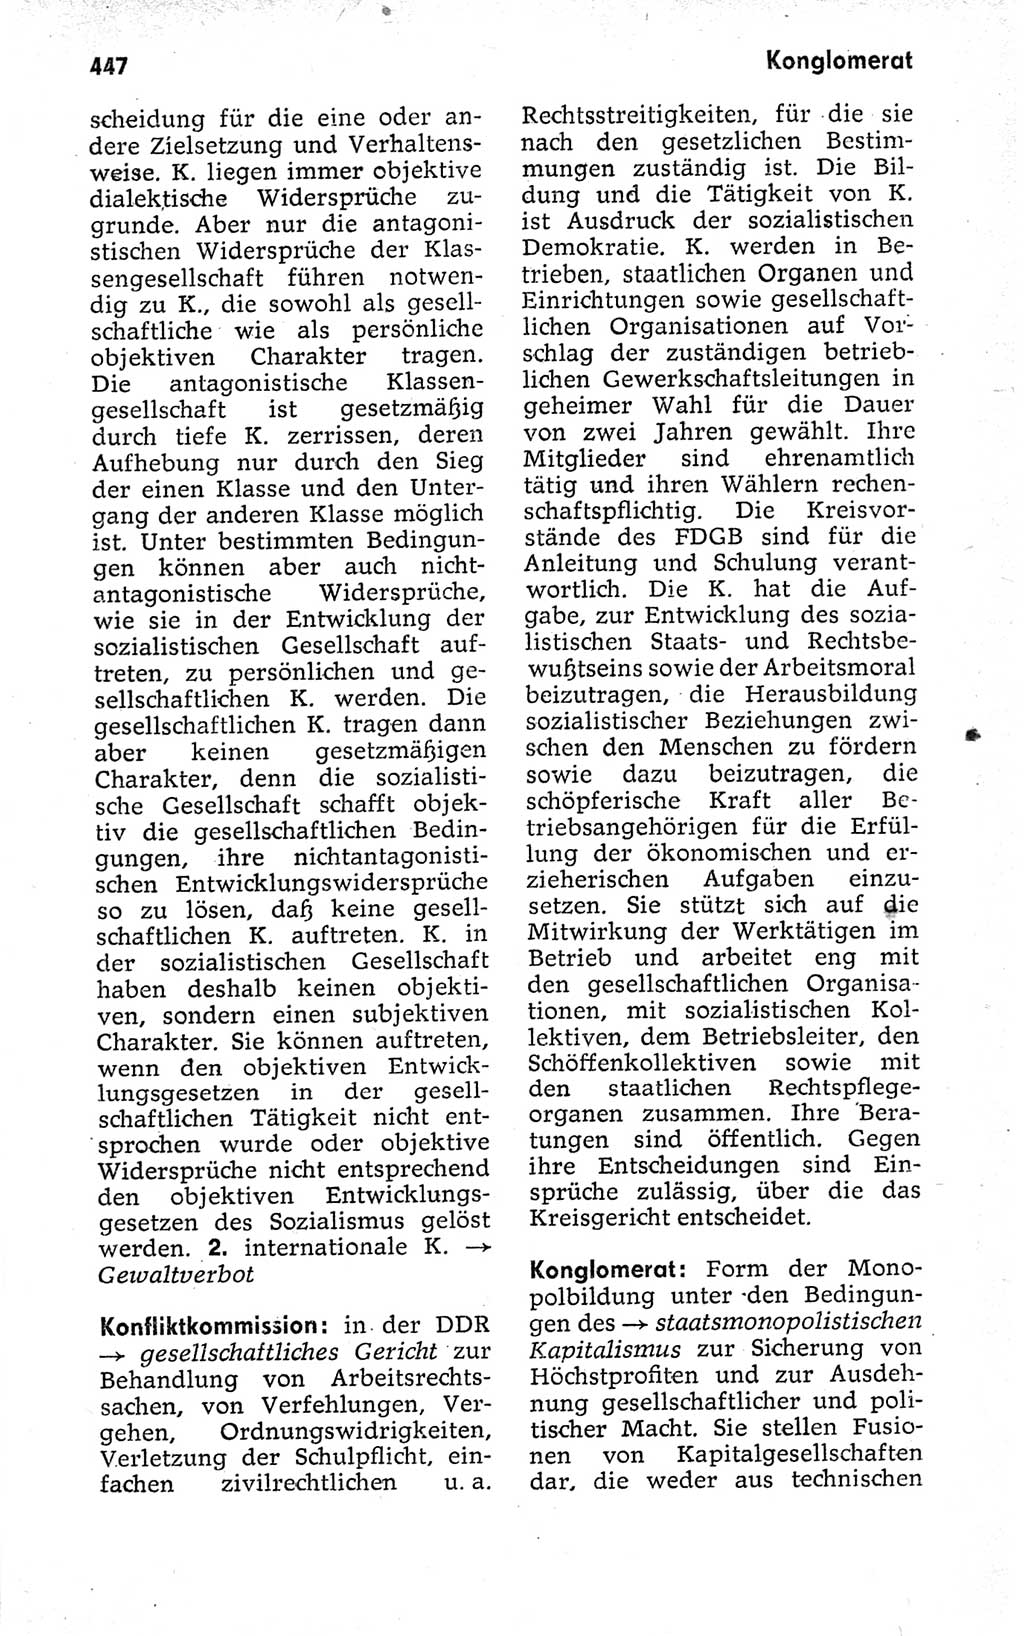 Kleines politisches Wörterbuch [Deutsche Demokratische Republik (DDR)] 1973, Seite 447 (Kl. pol. Wb. DDR 1973, S. 447)